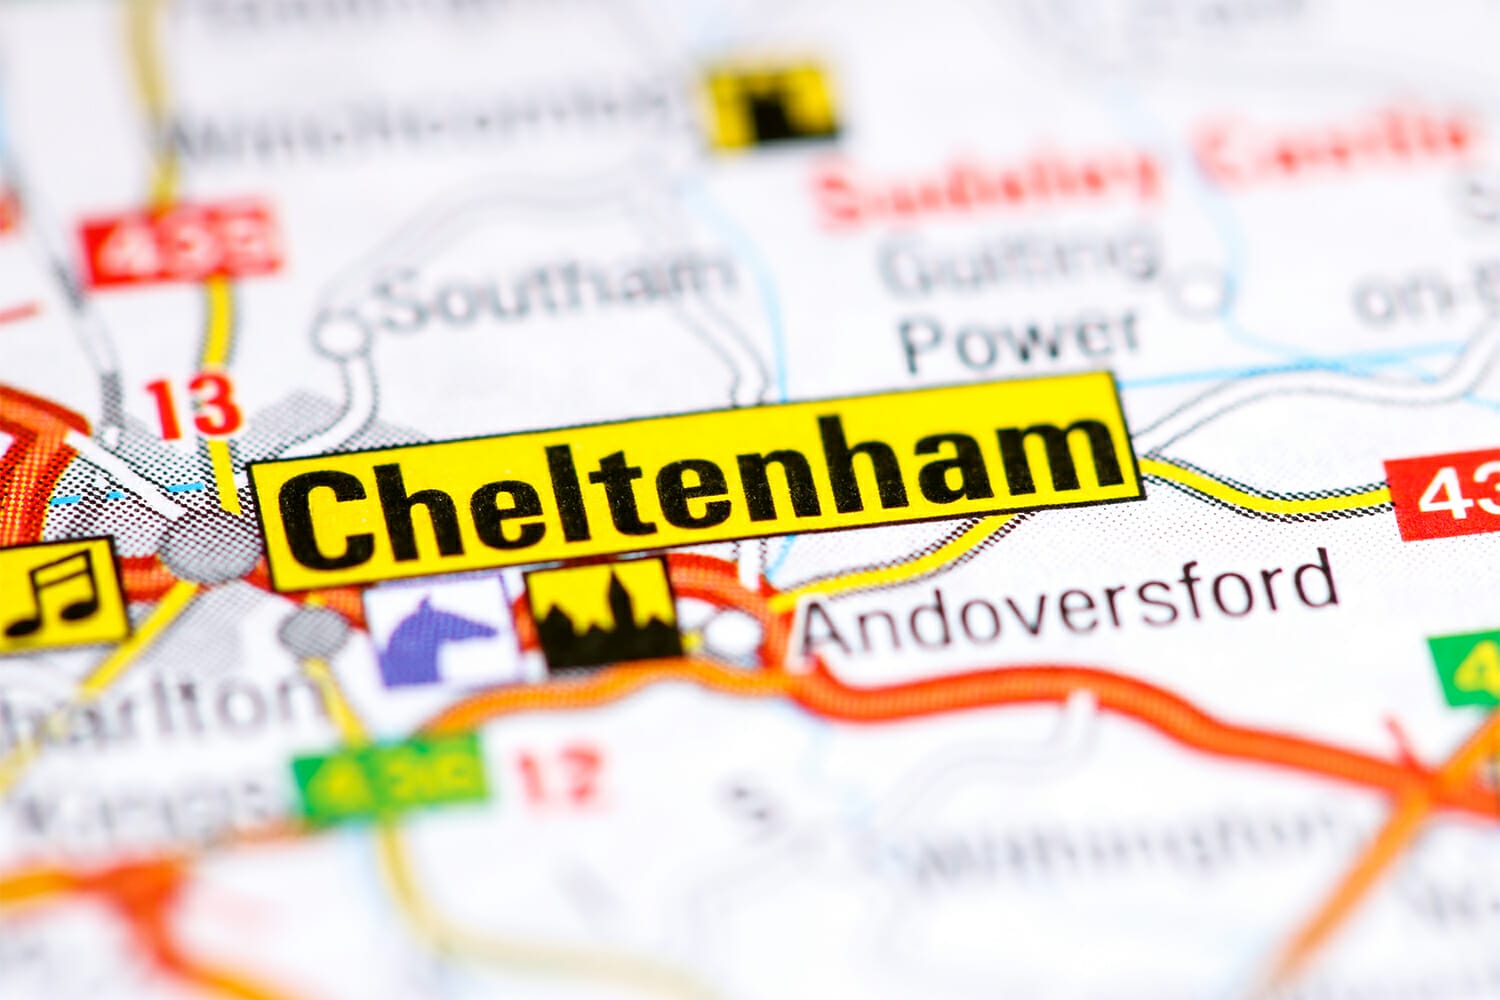 Locksmith Cheltenham - Master Locksmiths Association Approved Locksmiths